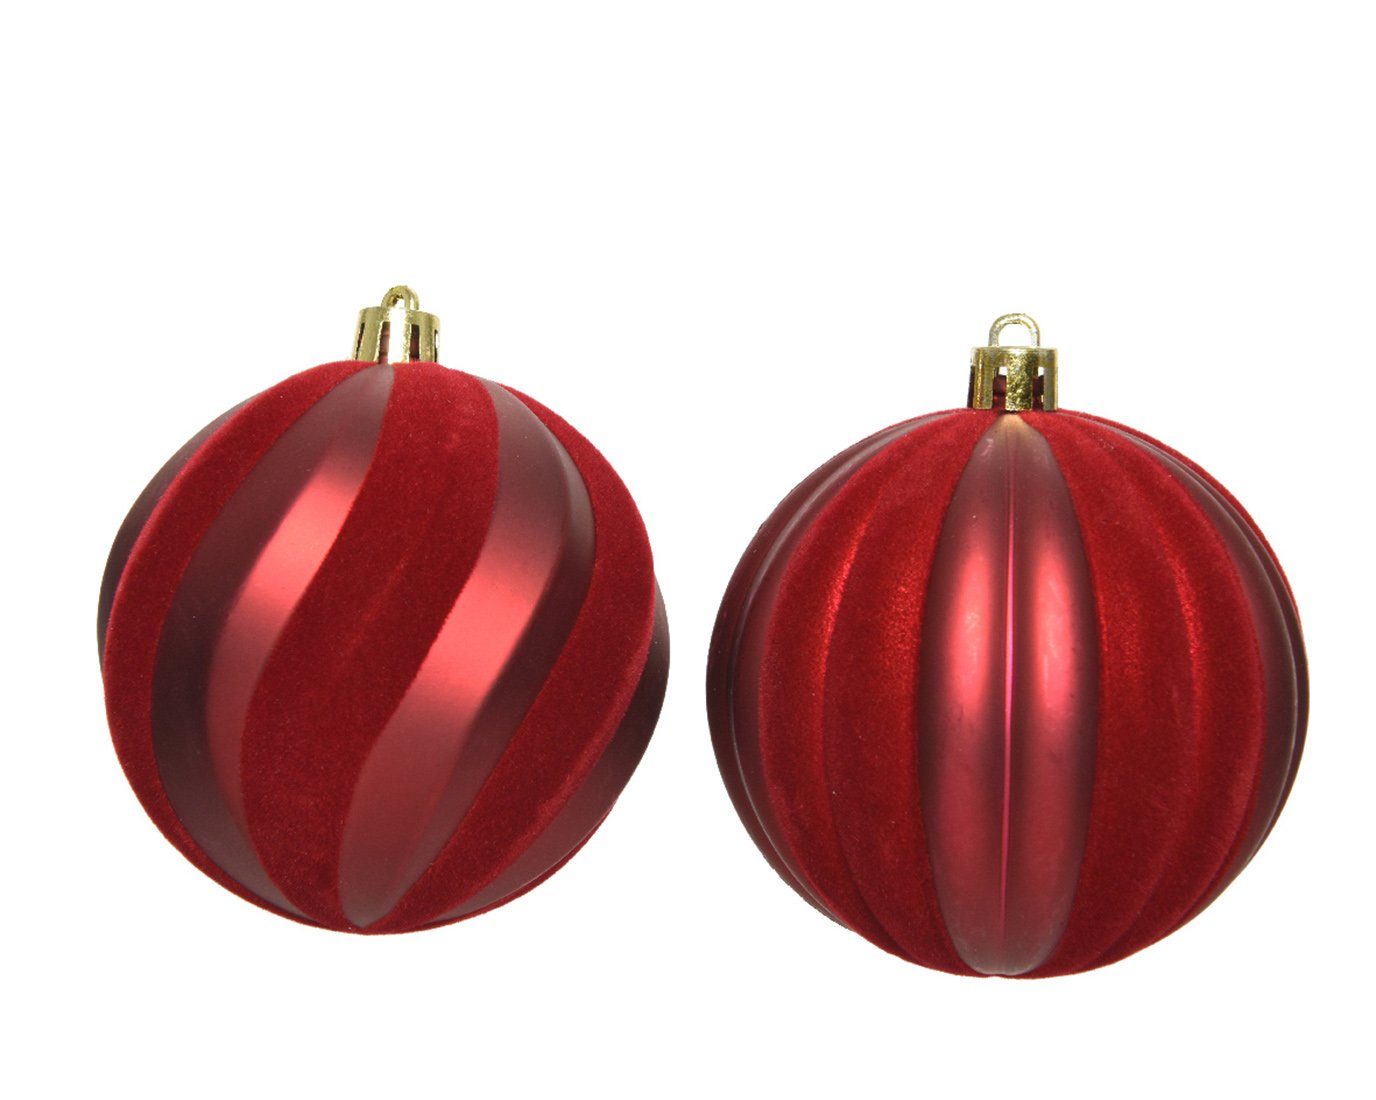 Kunststoff Streifen season decorations - Ochsenblut 12er Set gerillt Decoris Weihnachtsbaumkugel, Weihnachtskugeln 8cm